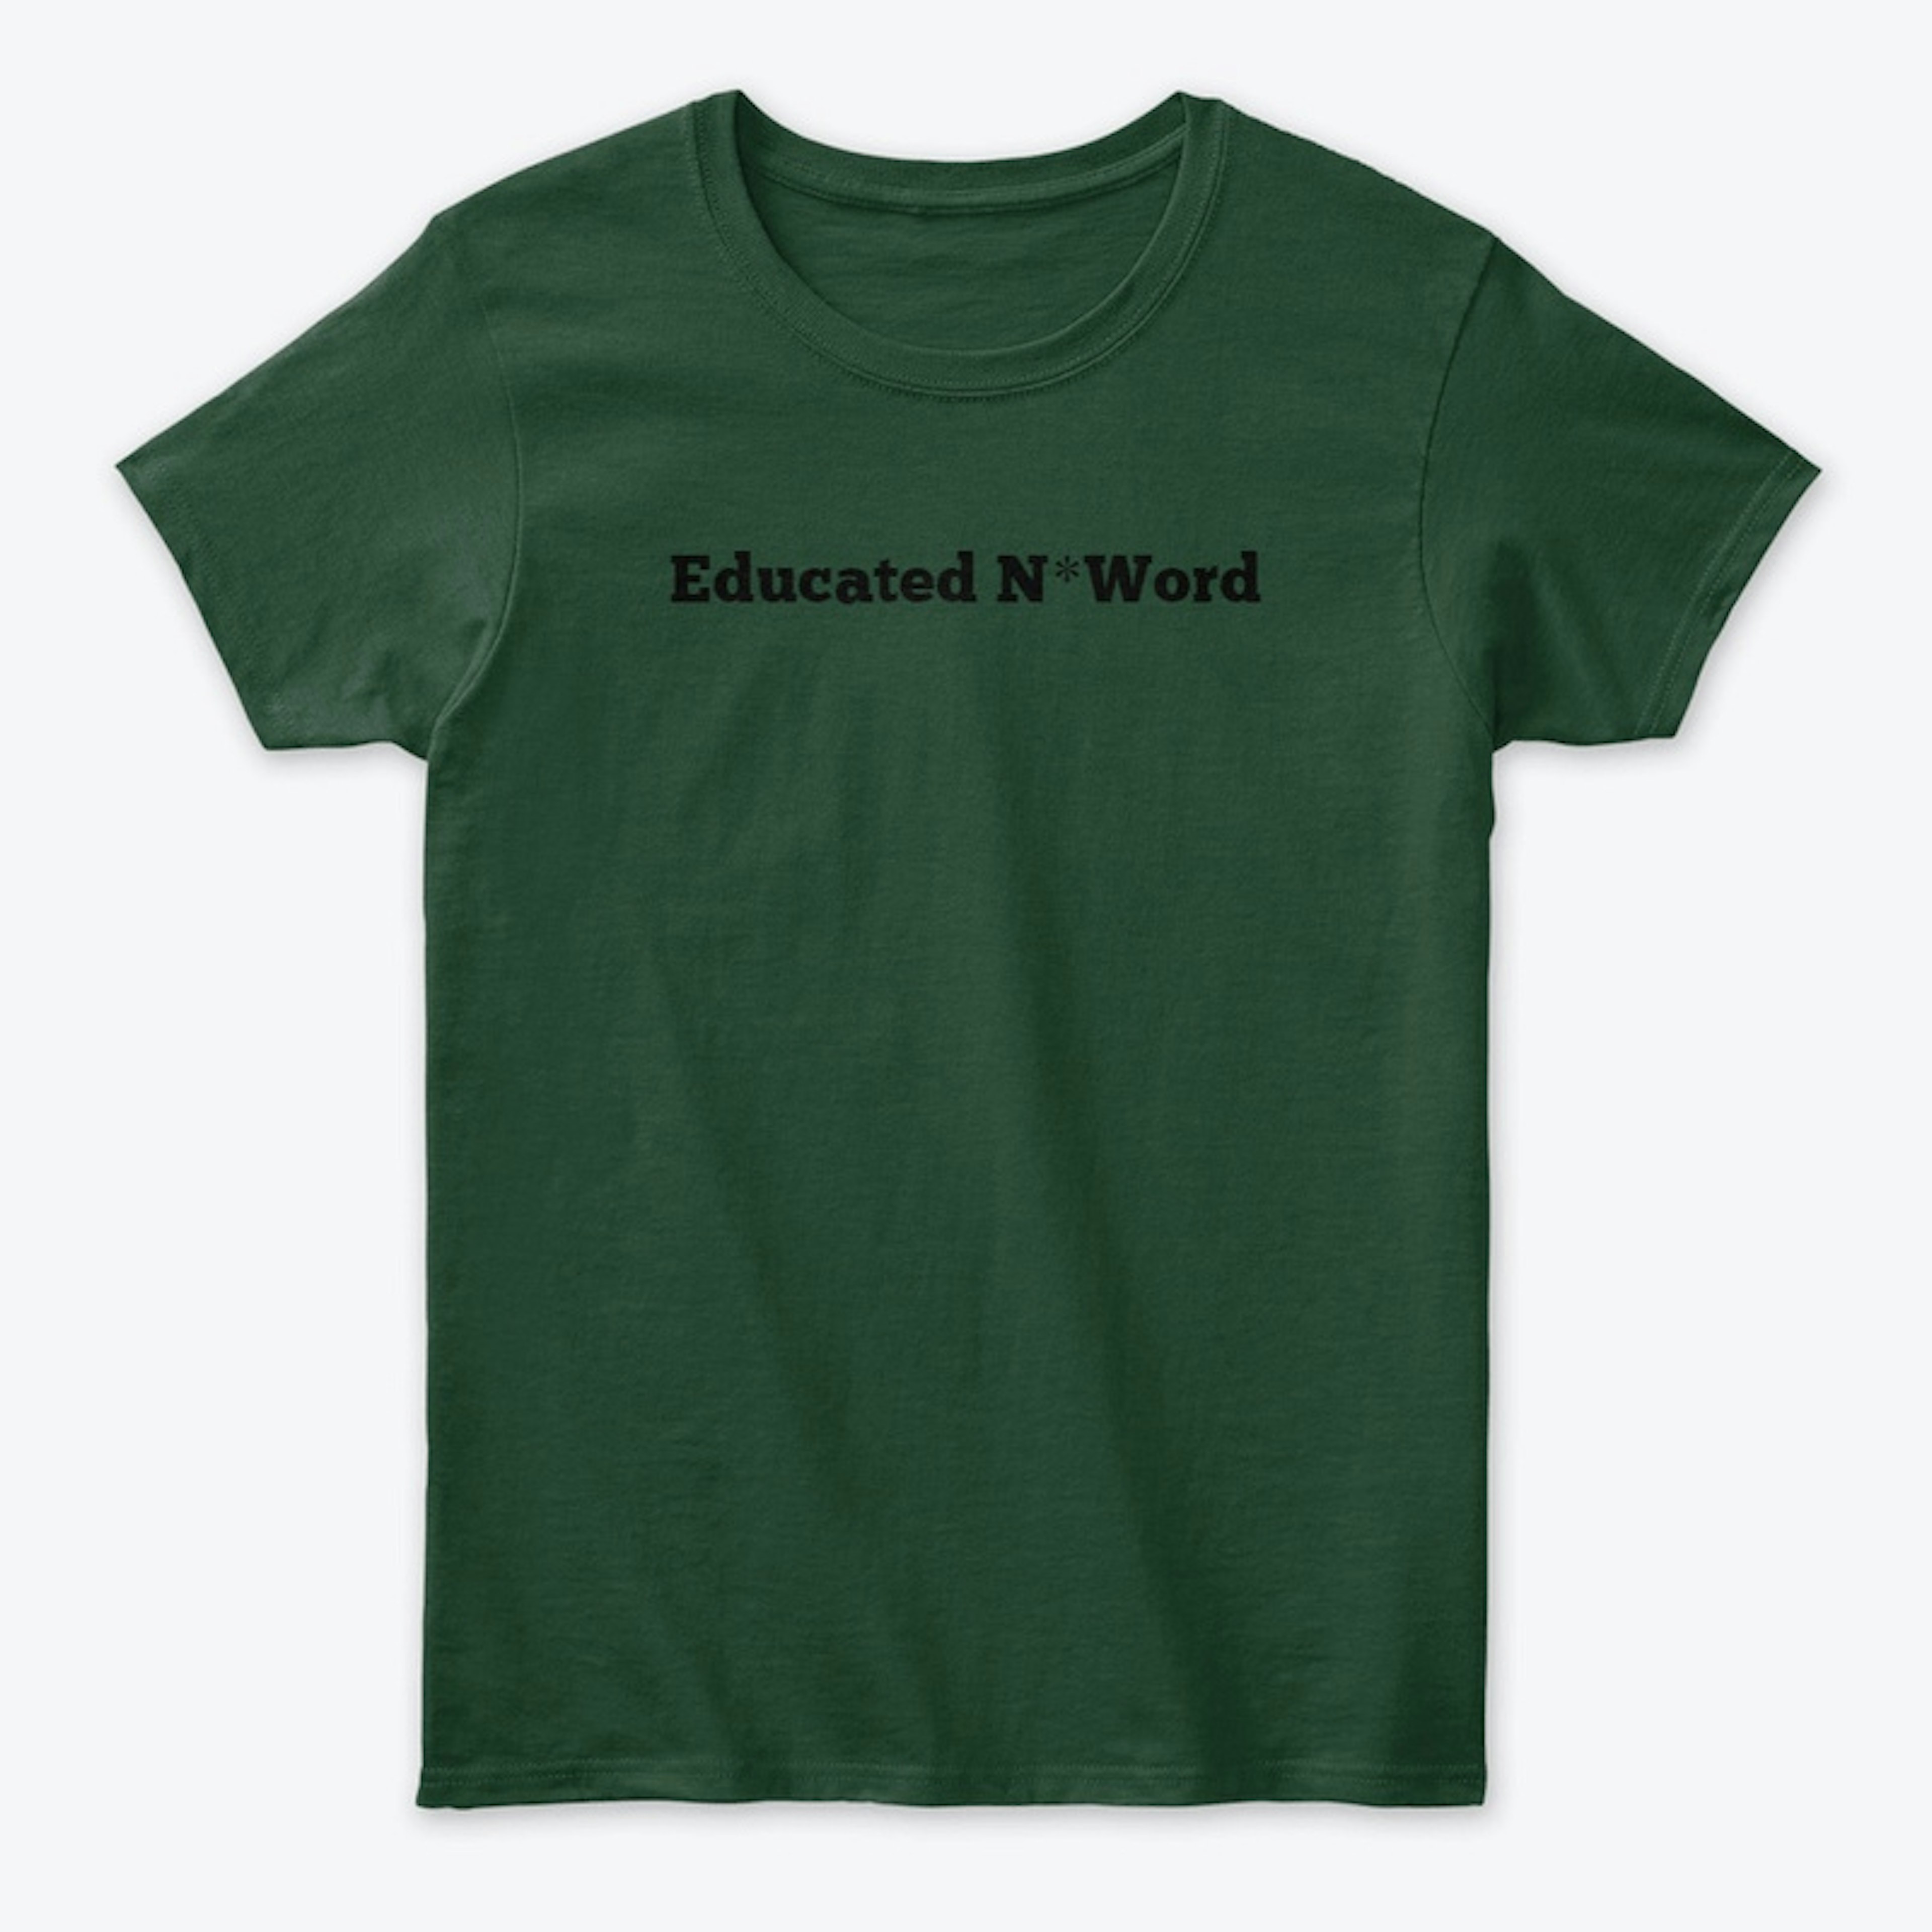 Educated N*Word